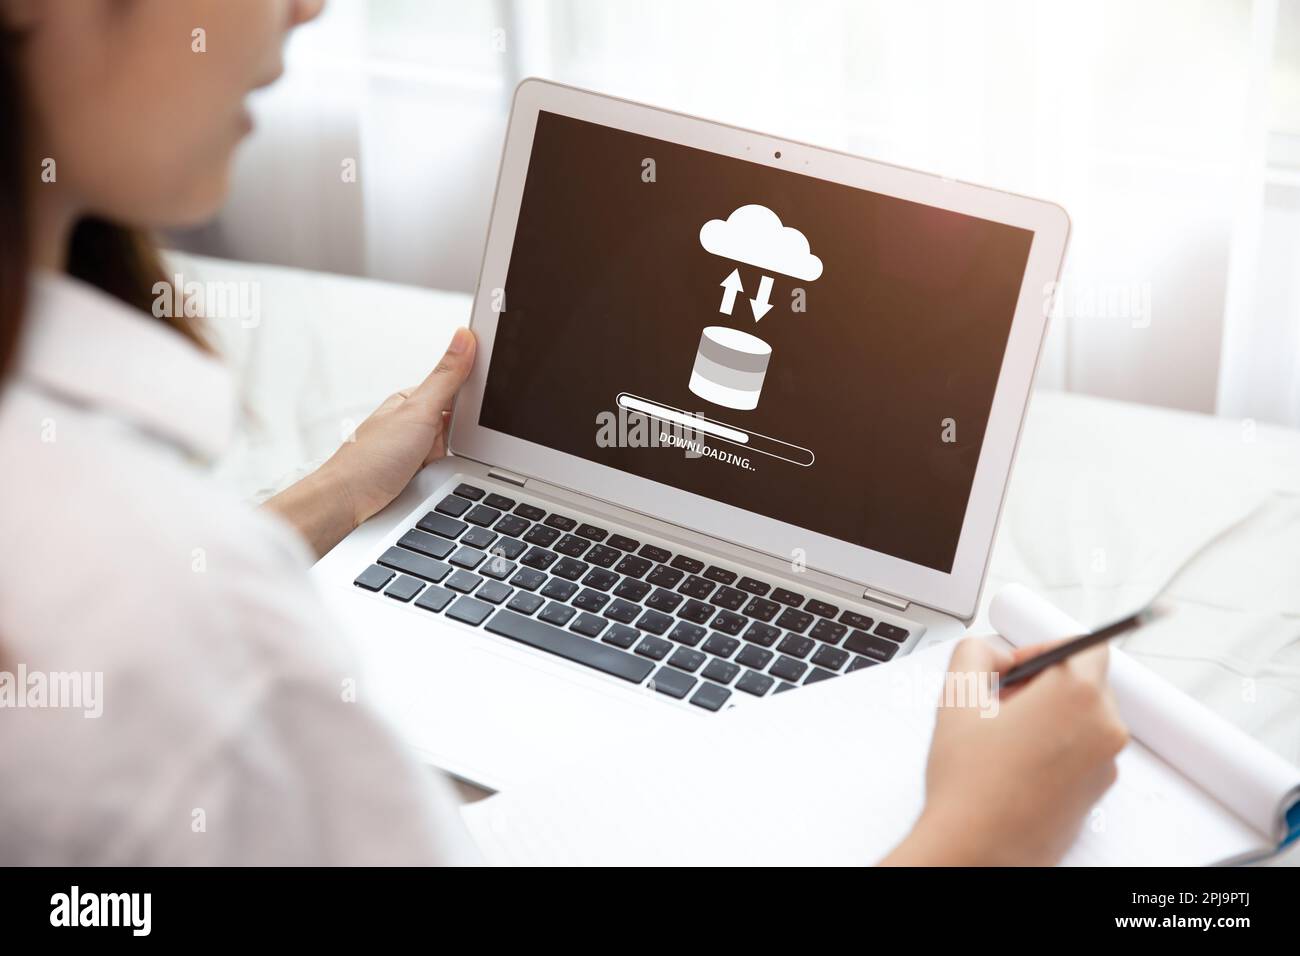 Personnes utilisant la technologie Cloud Drive Télécharger ou télécharger Charger des fichiers enregistrés à partir d'Internet Cloud Storage System Banque D'Images